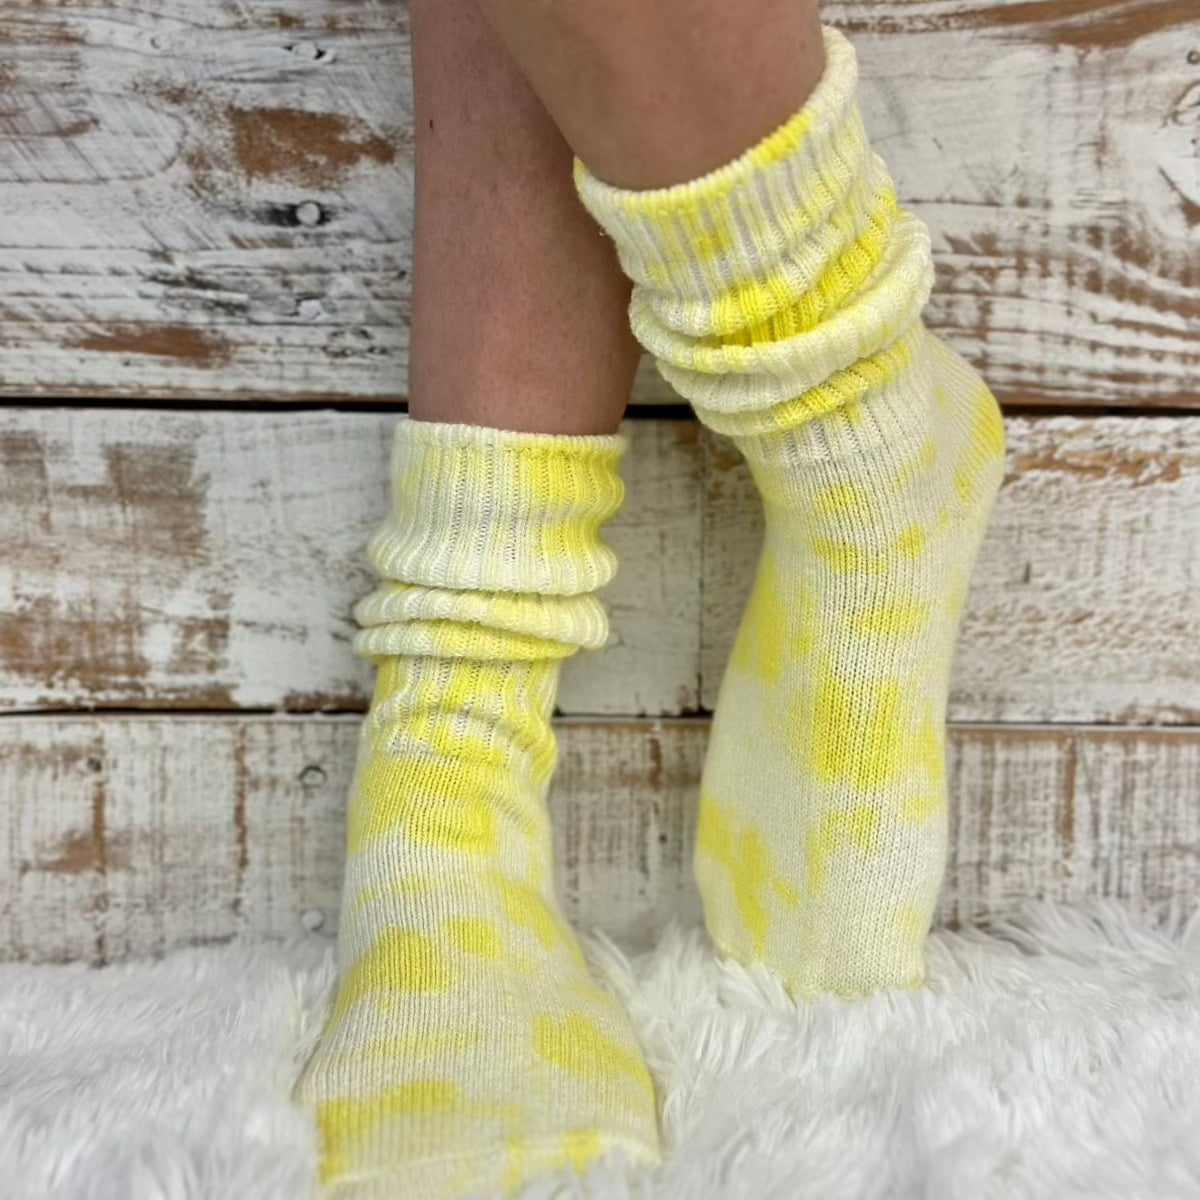 Mini cute scrunchy tie dye yellow organic slouch socks Made in USA , tie dye socks women's near me